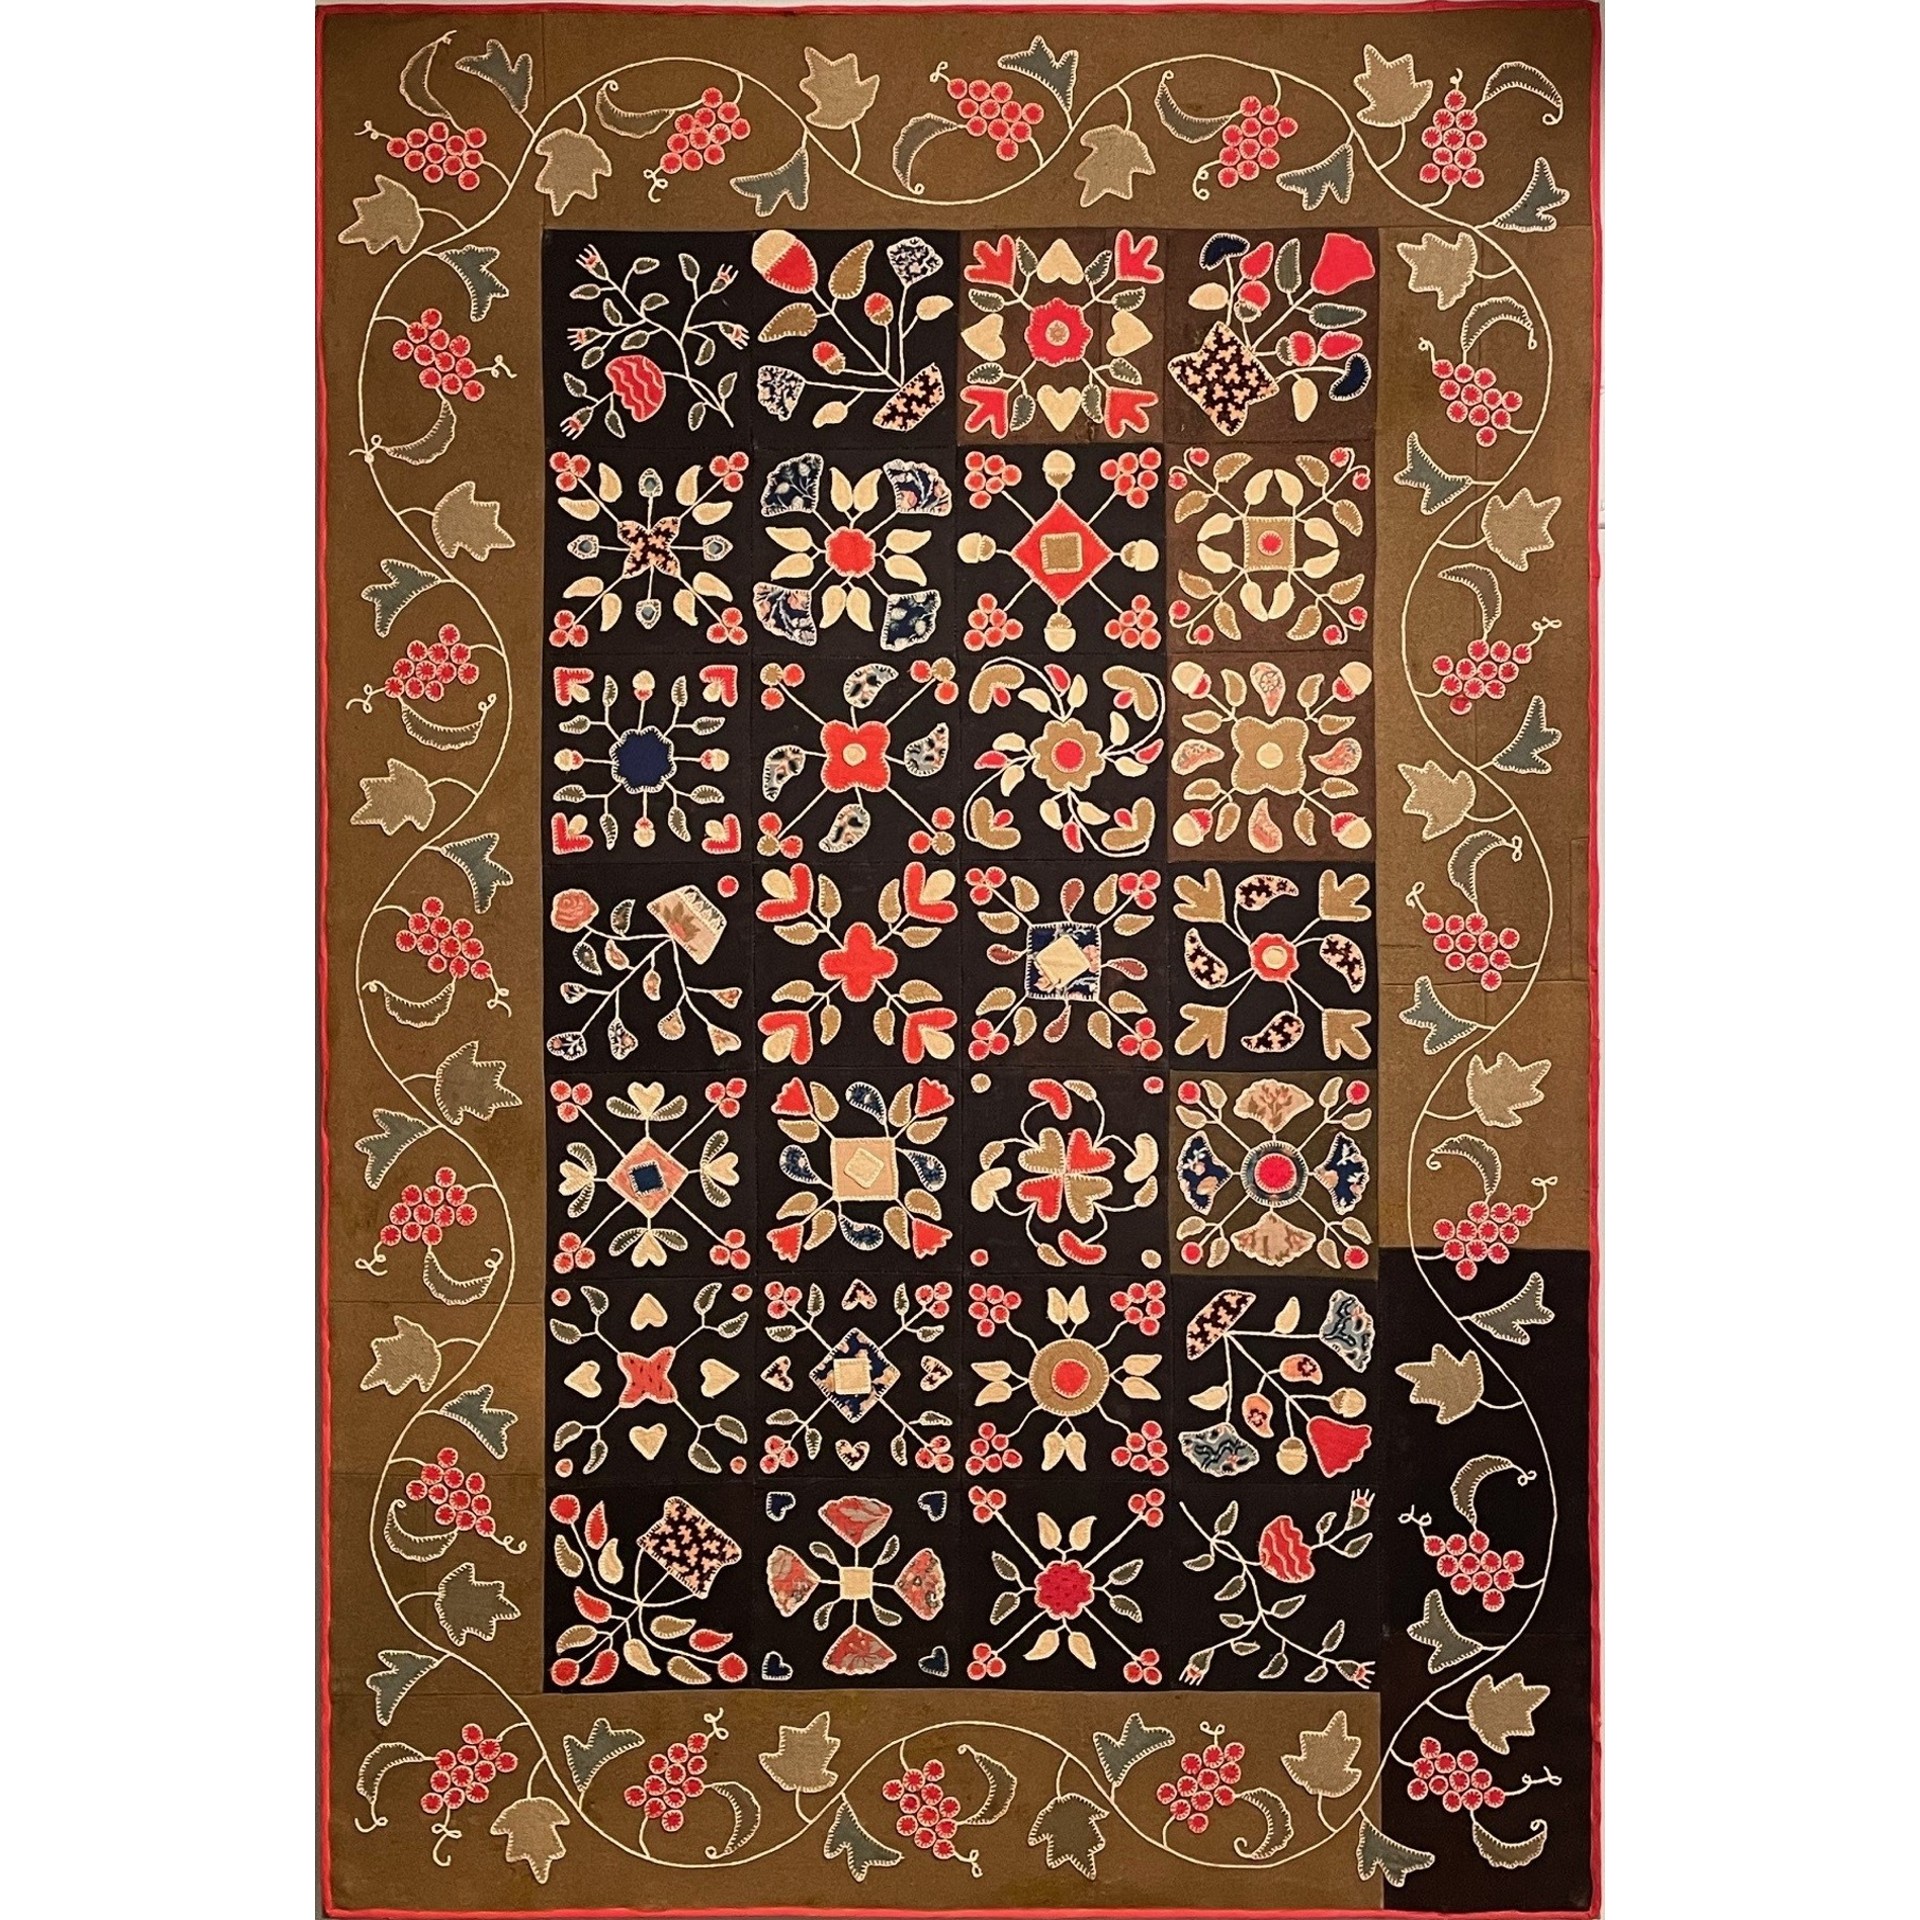 appliqued floral table rug rel=